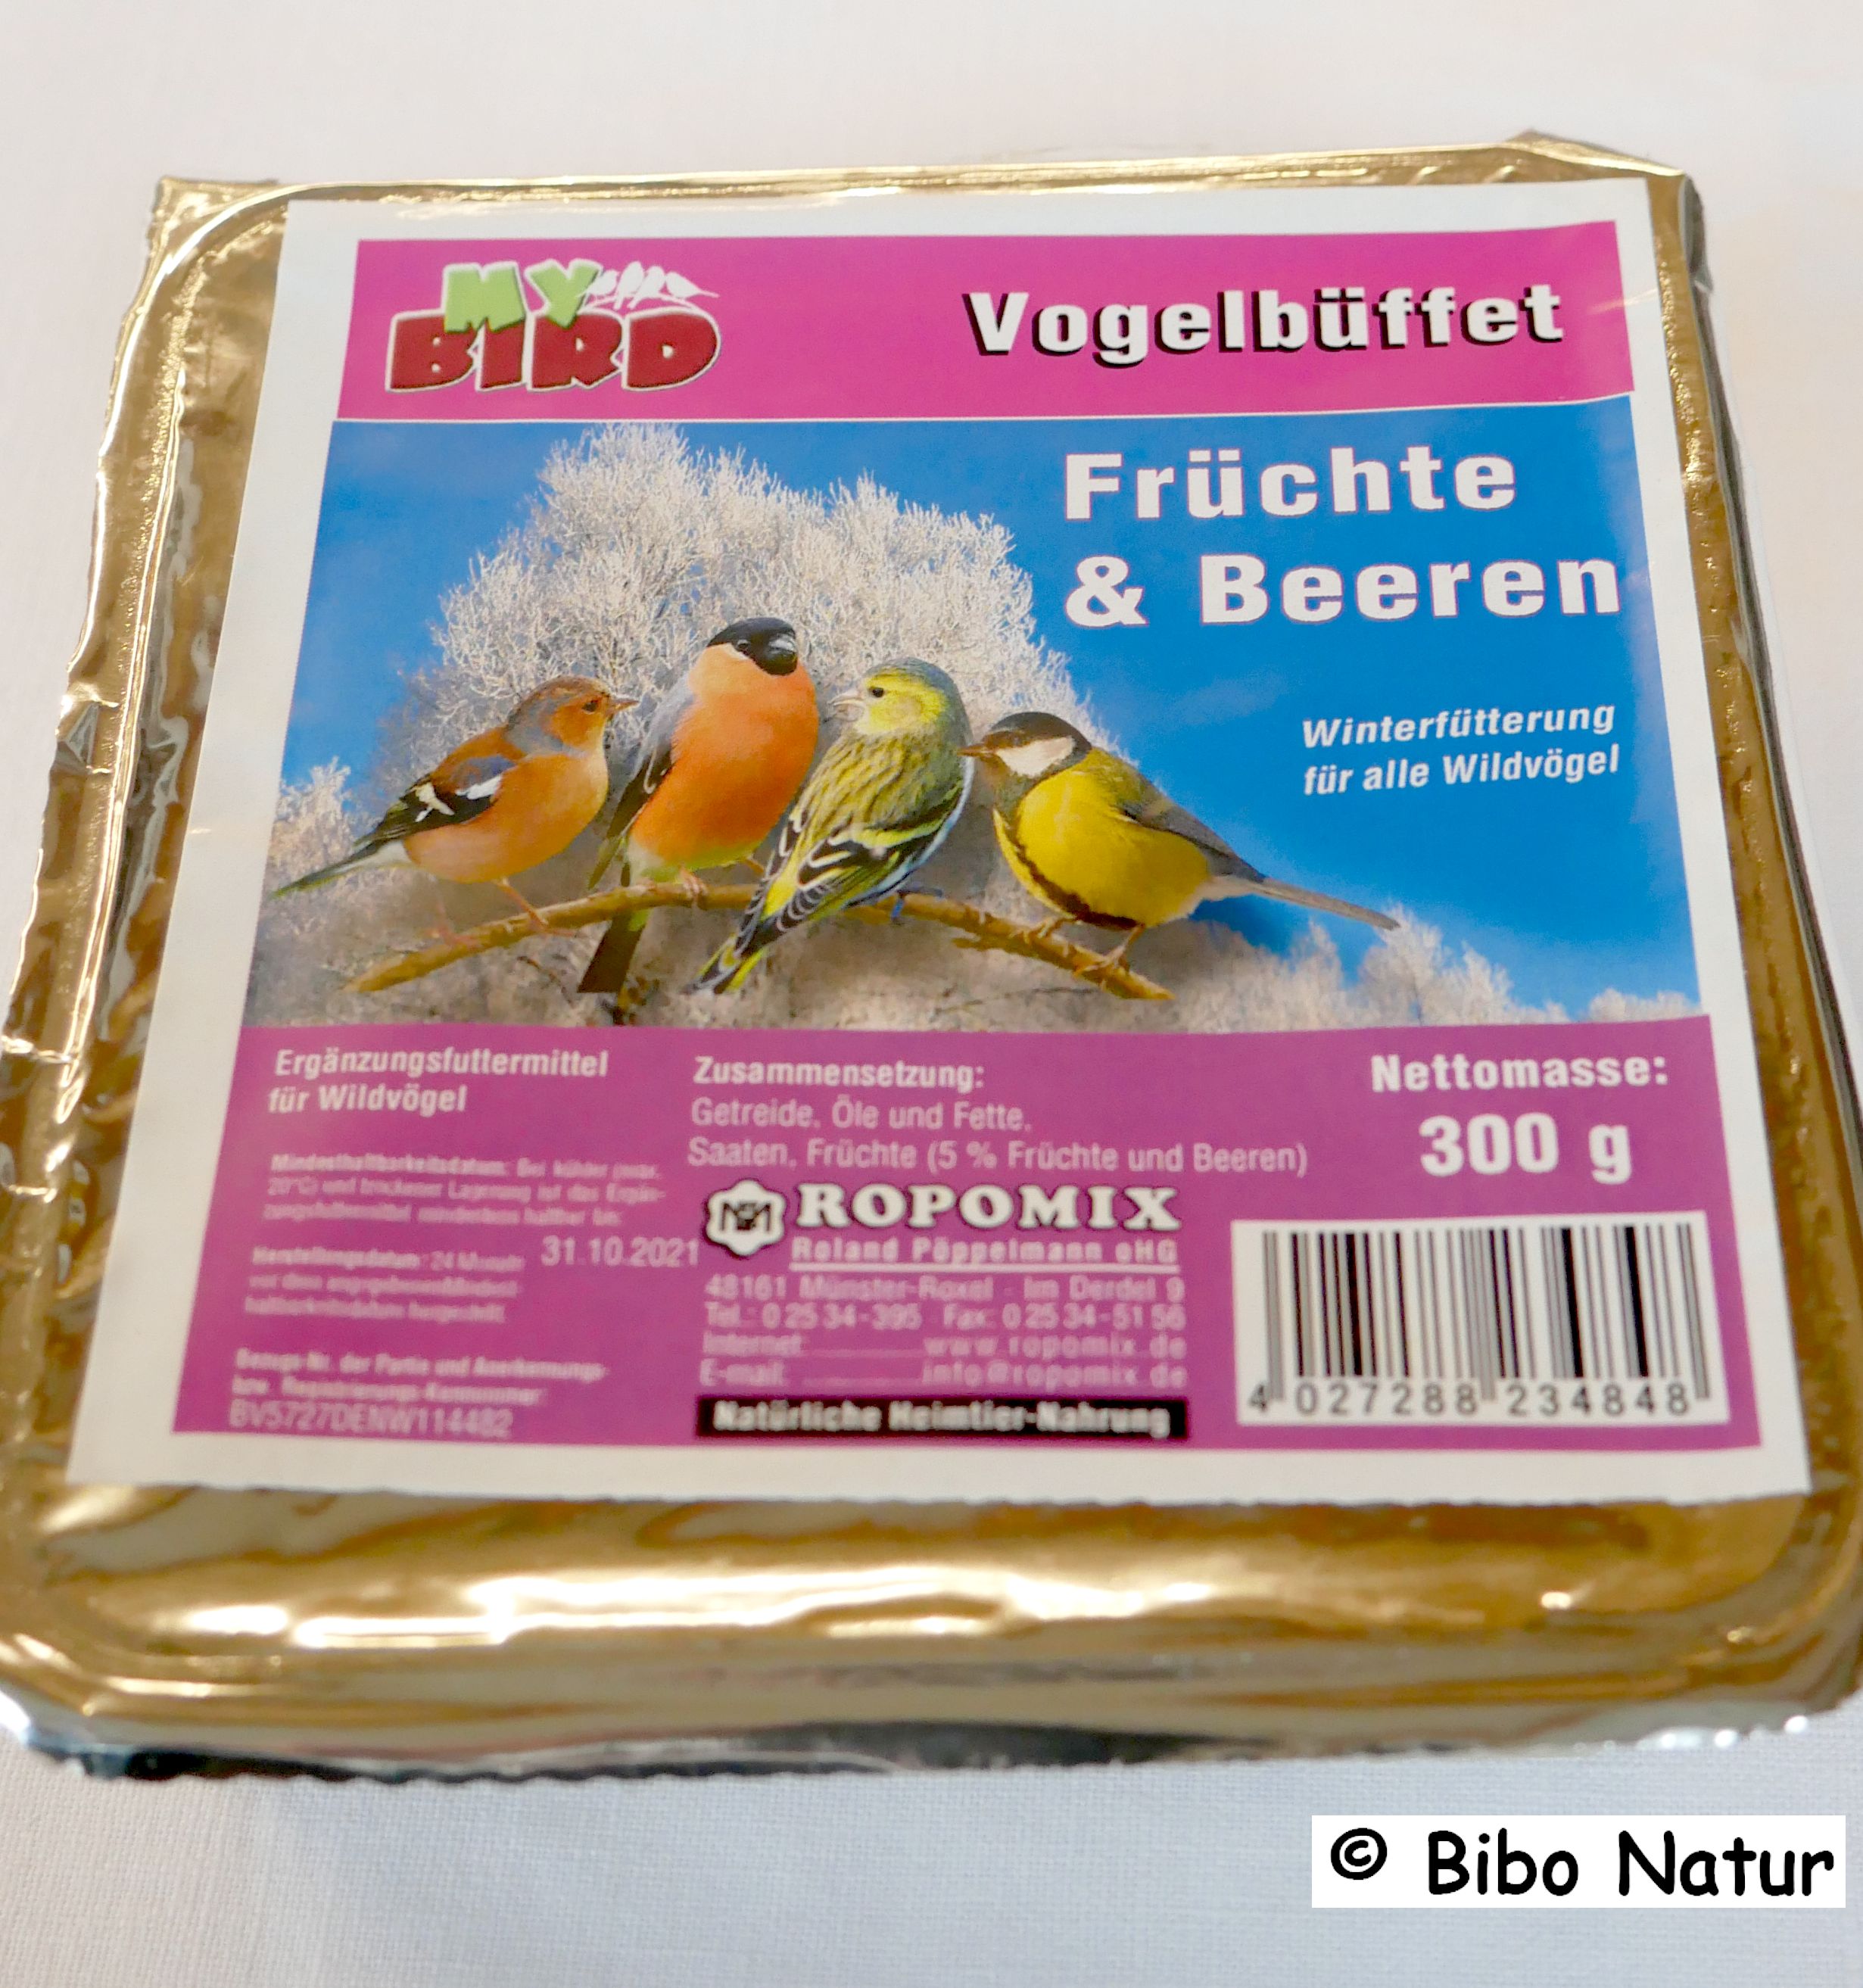 My Bird Vogelbüffet Früchte & Beeren